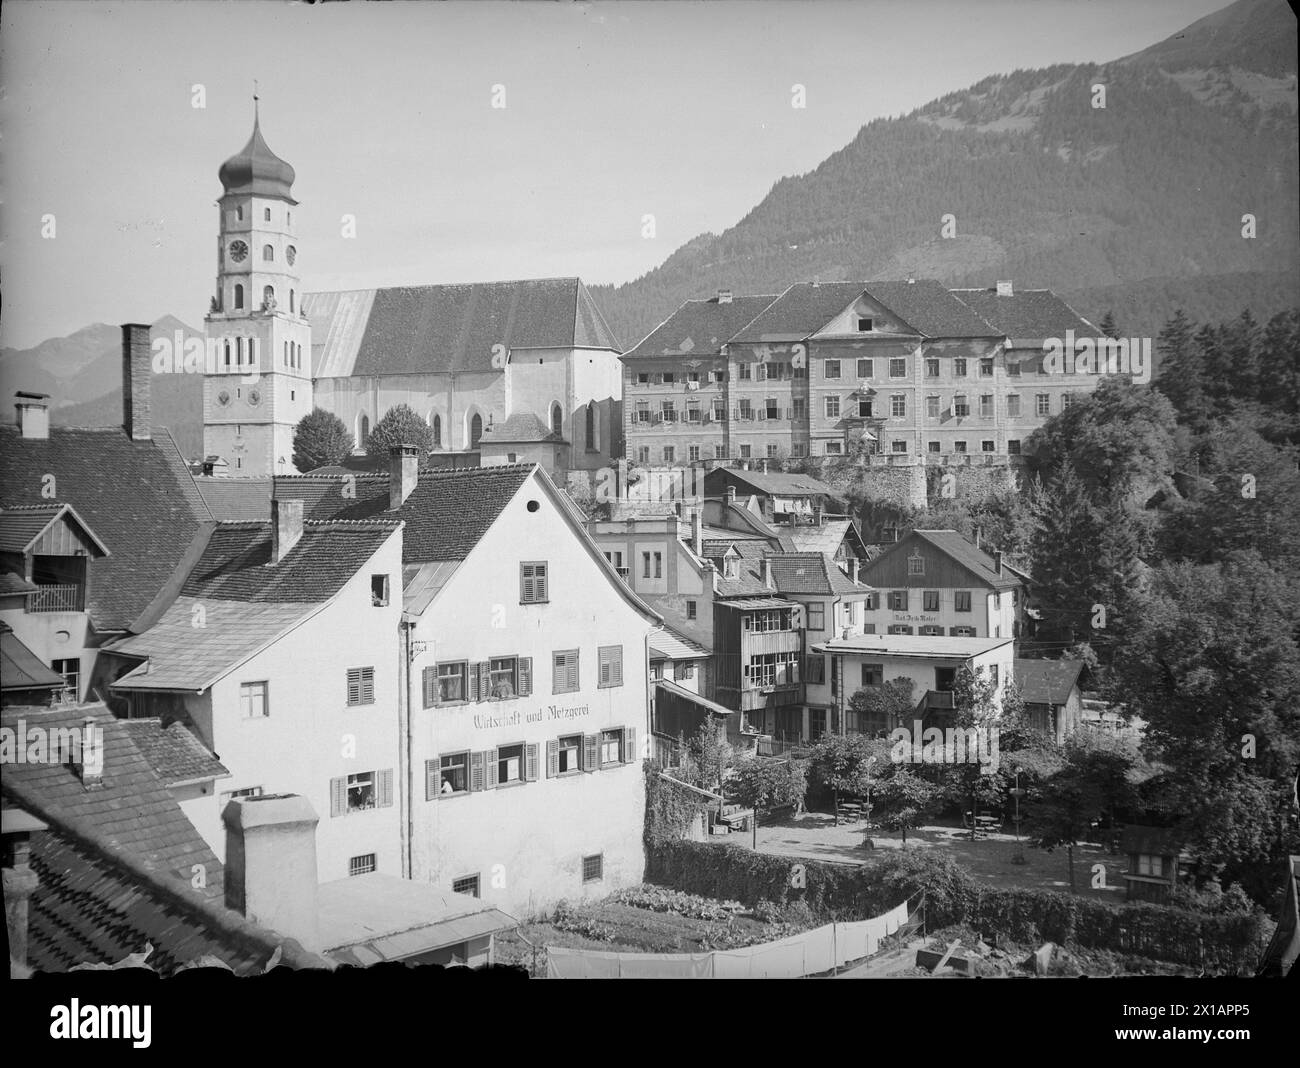 Bludenz, Teilaufsicht mit Kirche St. Laurentius und Schloss Gayenhofen, 1930 - 19300101_PD8955 - Rechteinfo: Rights Managed (RM) Stockfoto